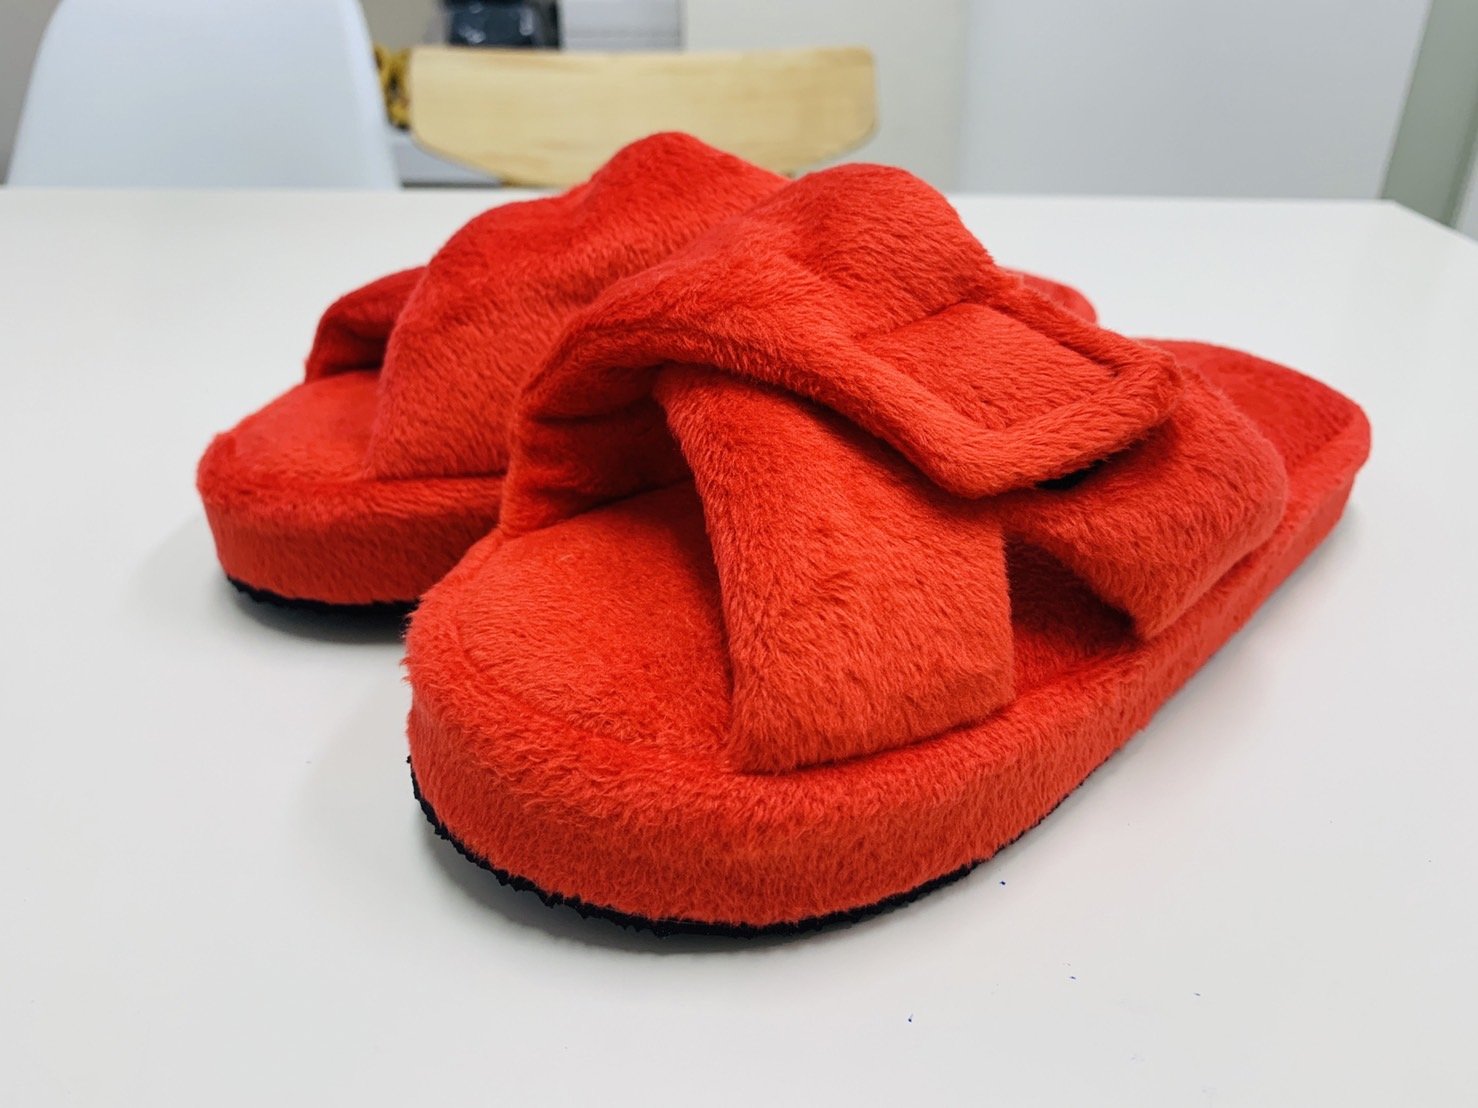 รองเท้าลดแรงกระแทก สำหรับผู้ที่มีอาการรองช้ำ Poly รุ่นปรับหน้ากว้างได้  สีแดง พื้นMicrofiberสีแดง